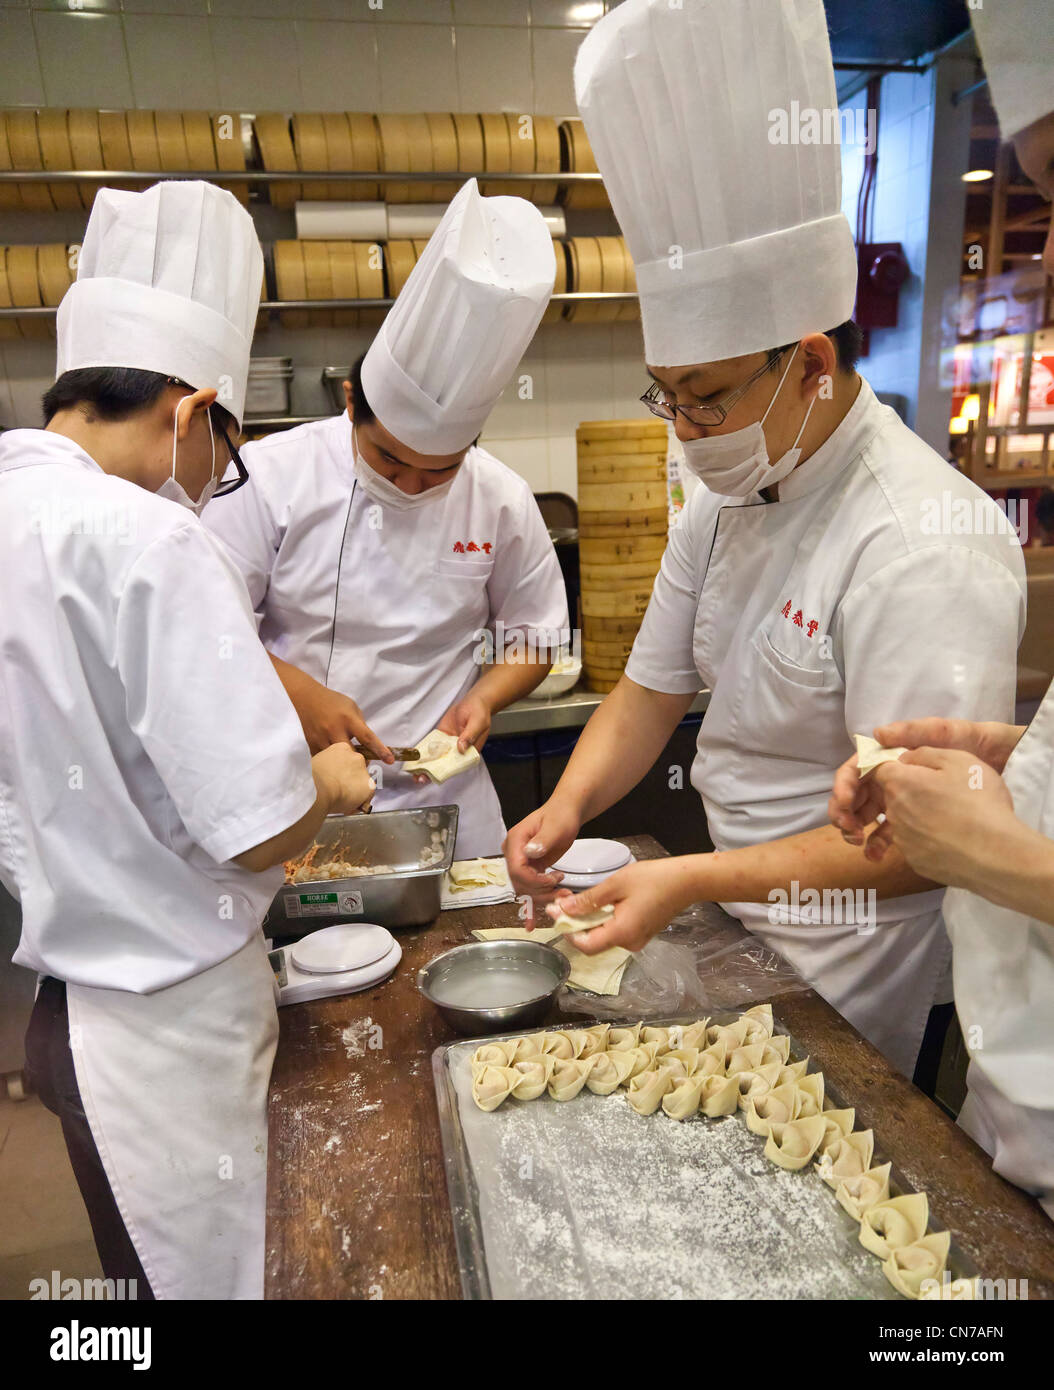 Chefs cinesi che la preparazione di gnocchi in una cucina, vaporizzatori di bambù Foto Stock